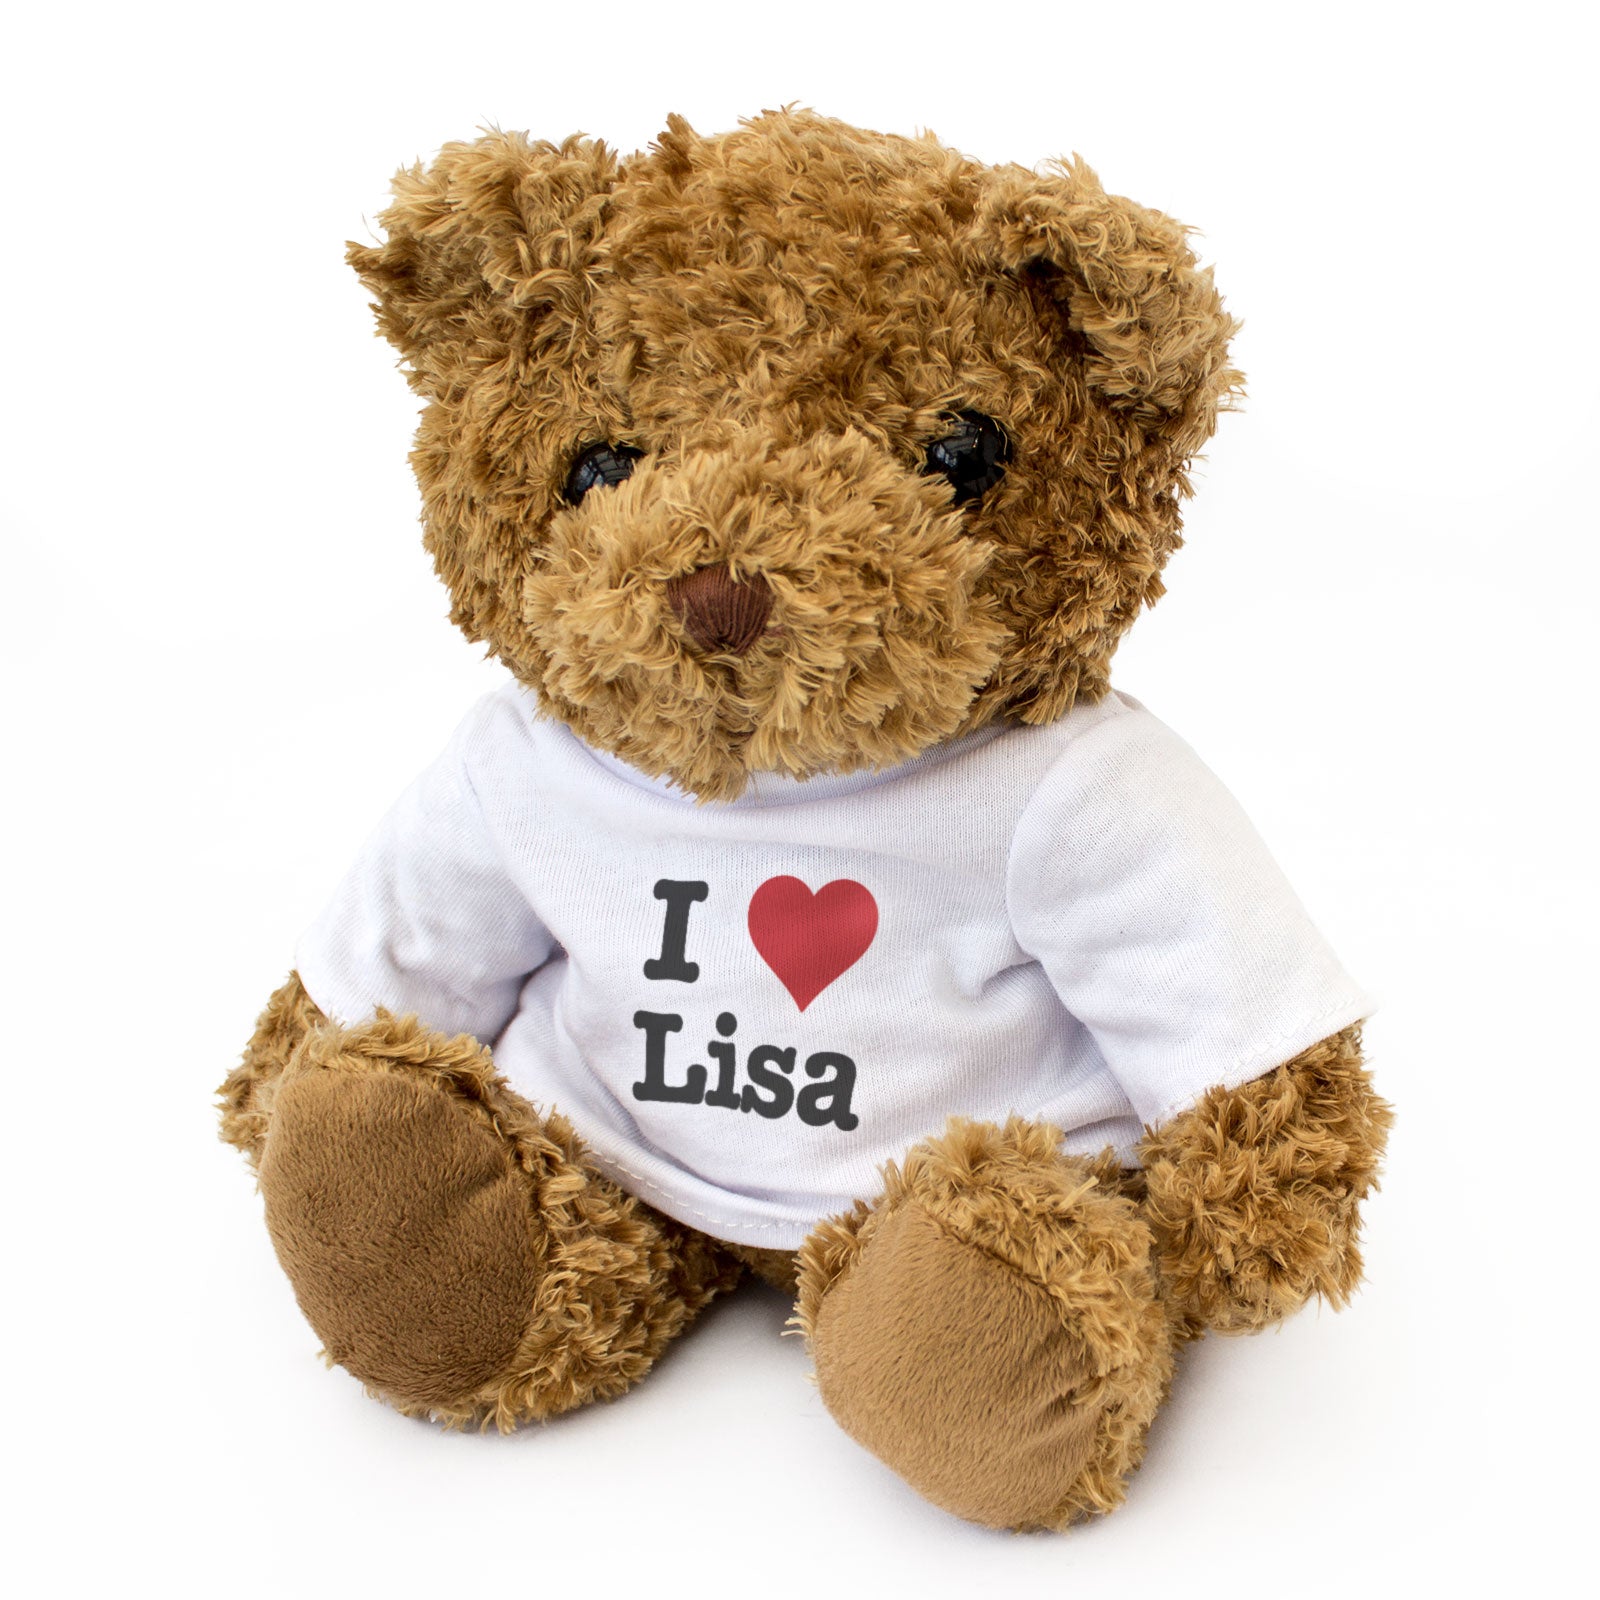 I Love Lisa - Teddy Bear